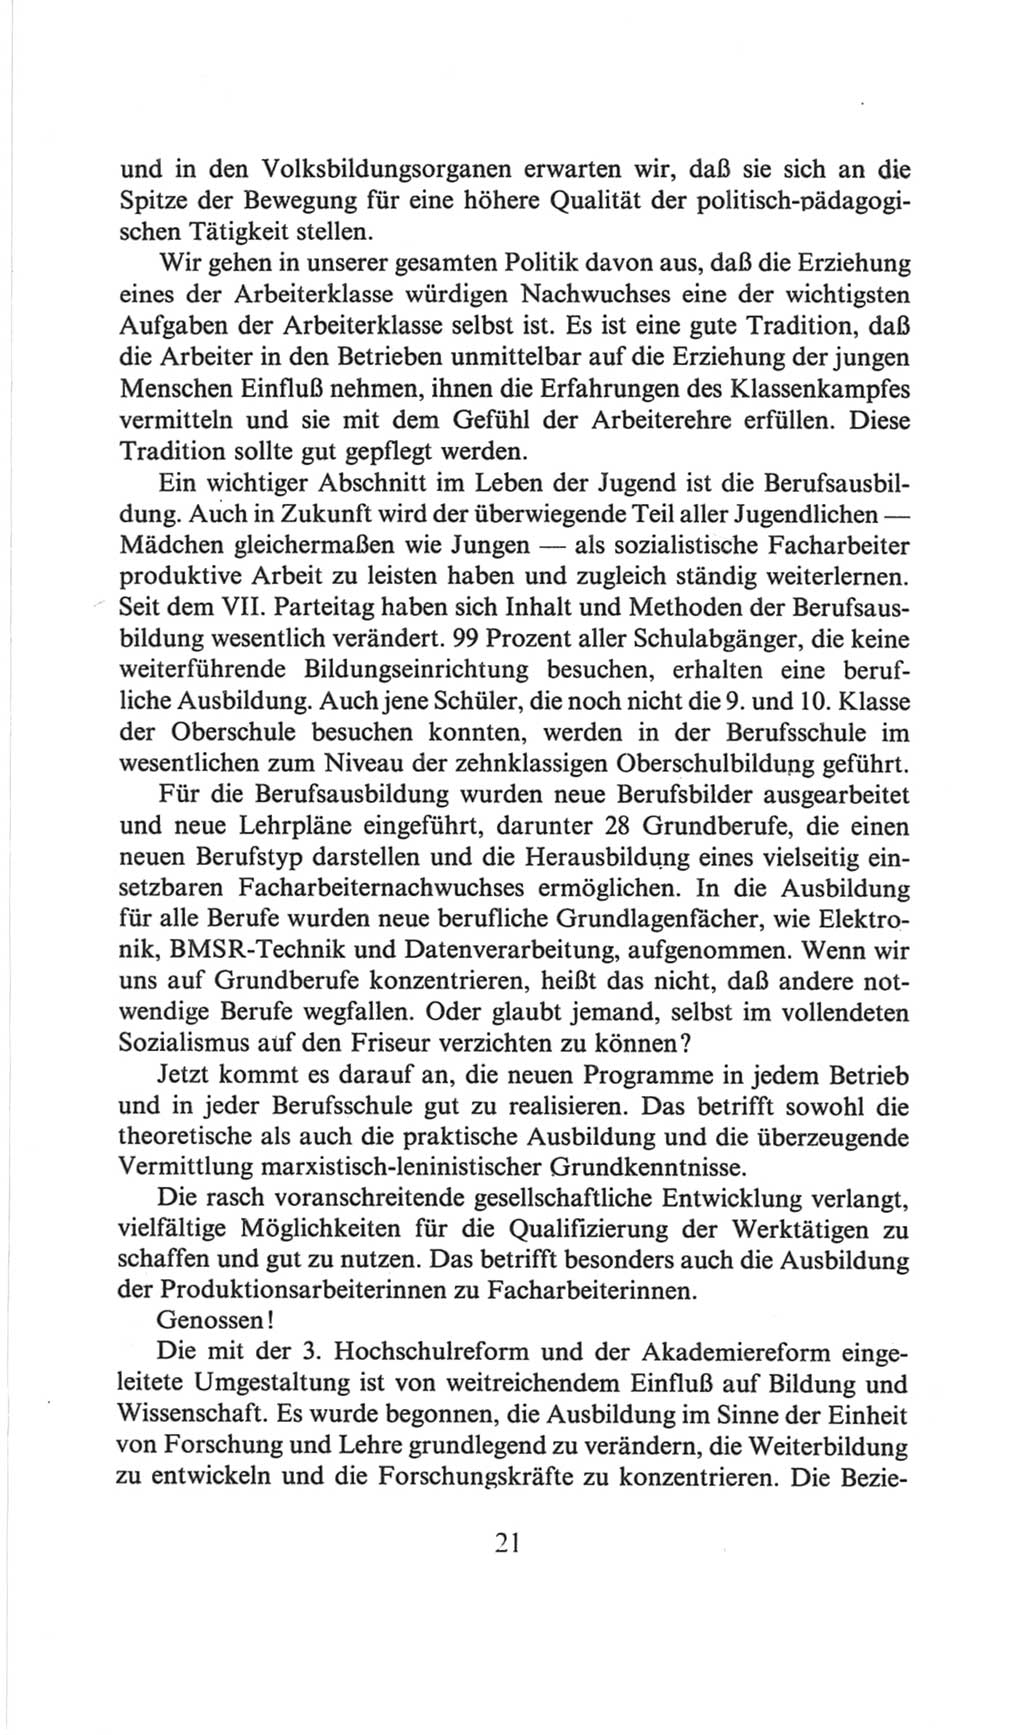 Volkskammer (VK) der Deutschen Demokratischen Republik (DDR), 6. Wahlperiode 1971-1976, Seite 21 (VK. DDR 6. WP. 1971-1976, S. 21)